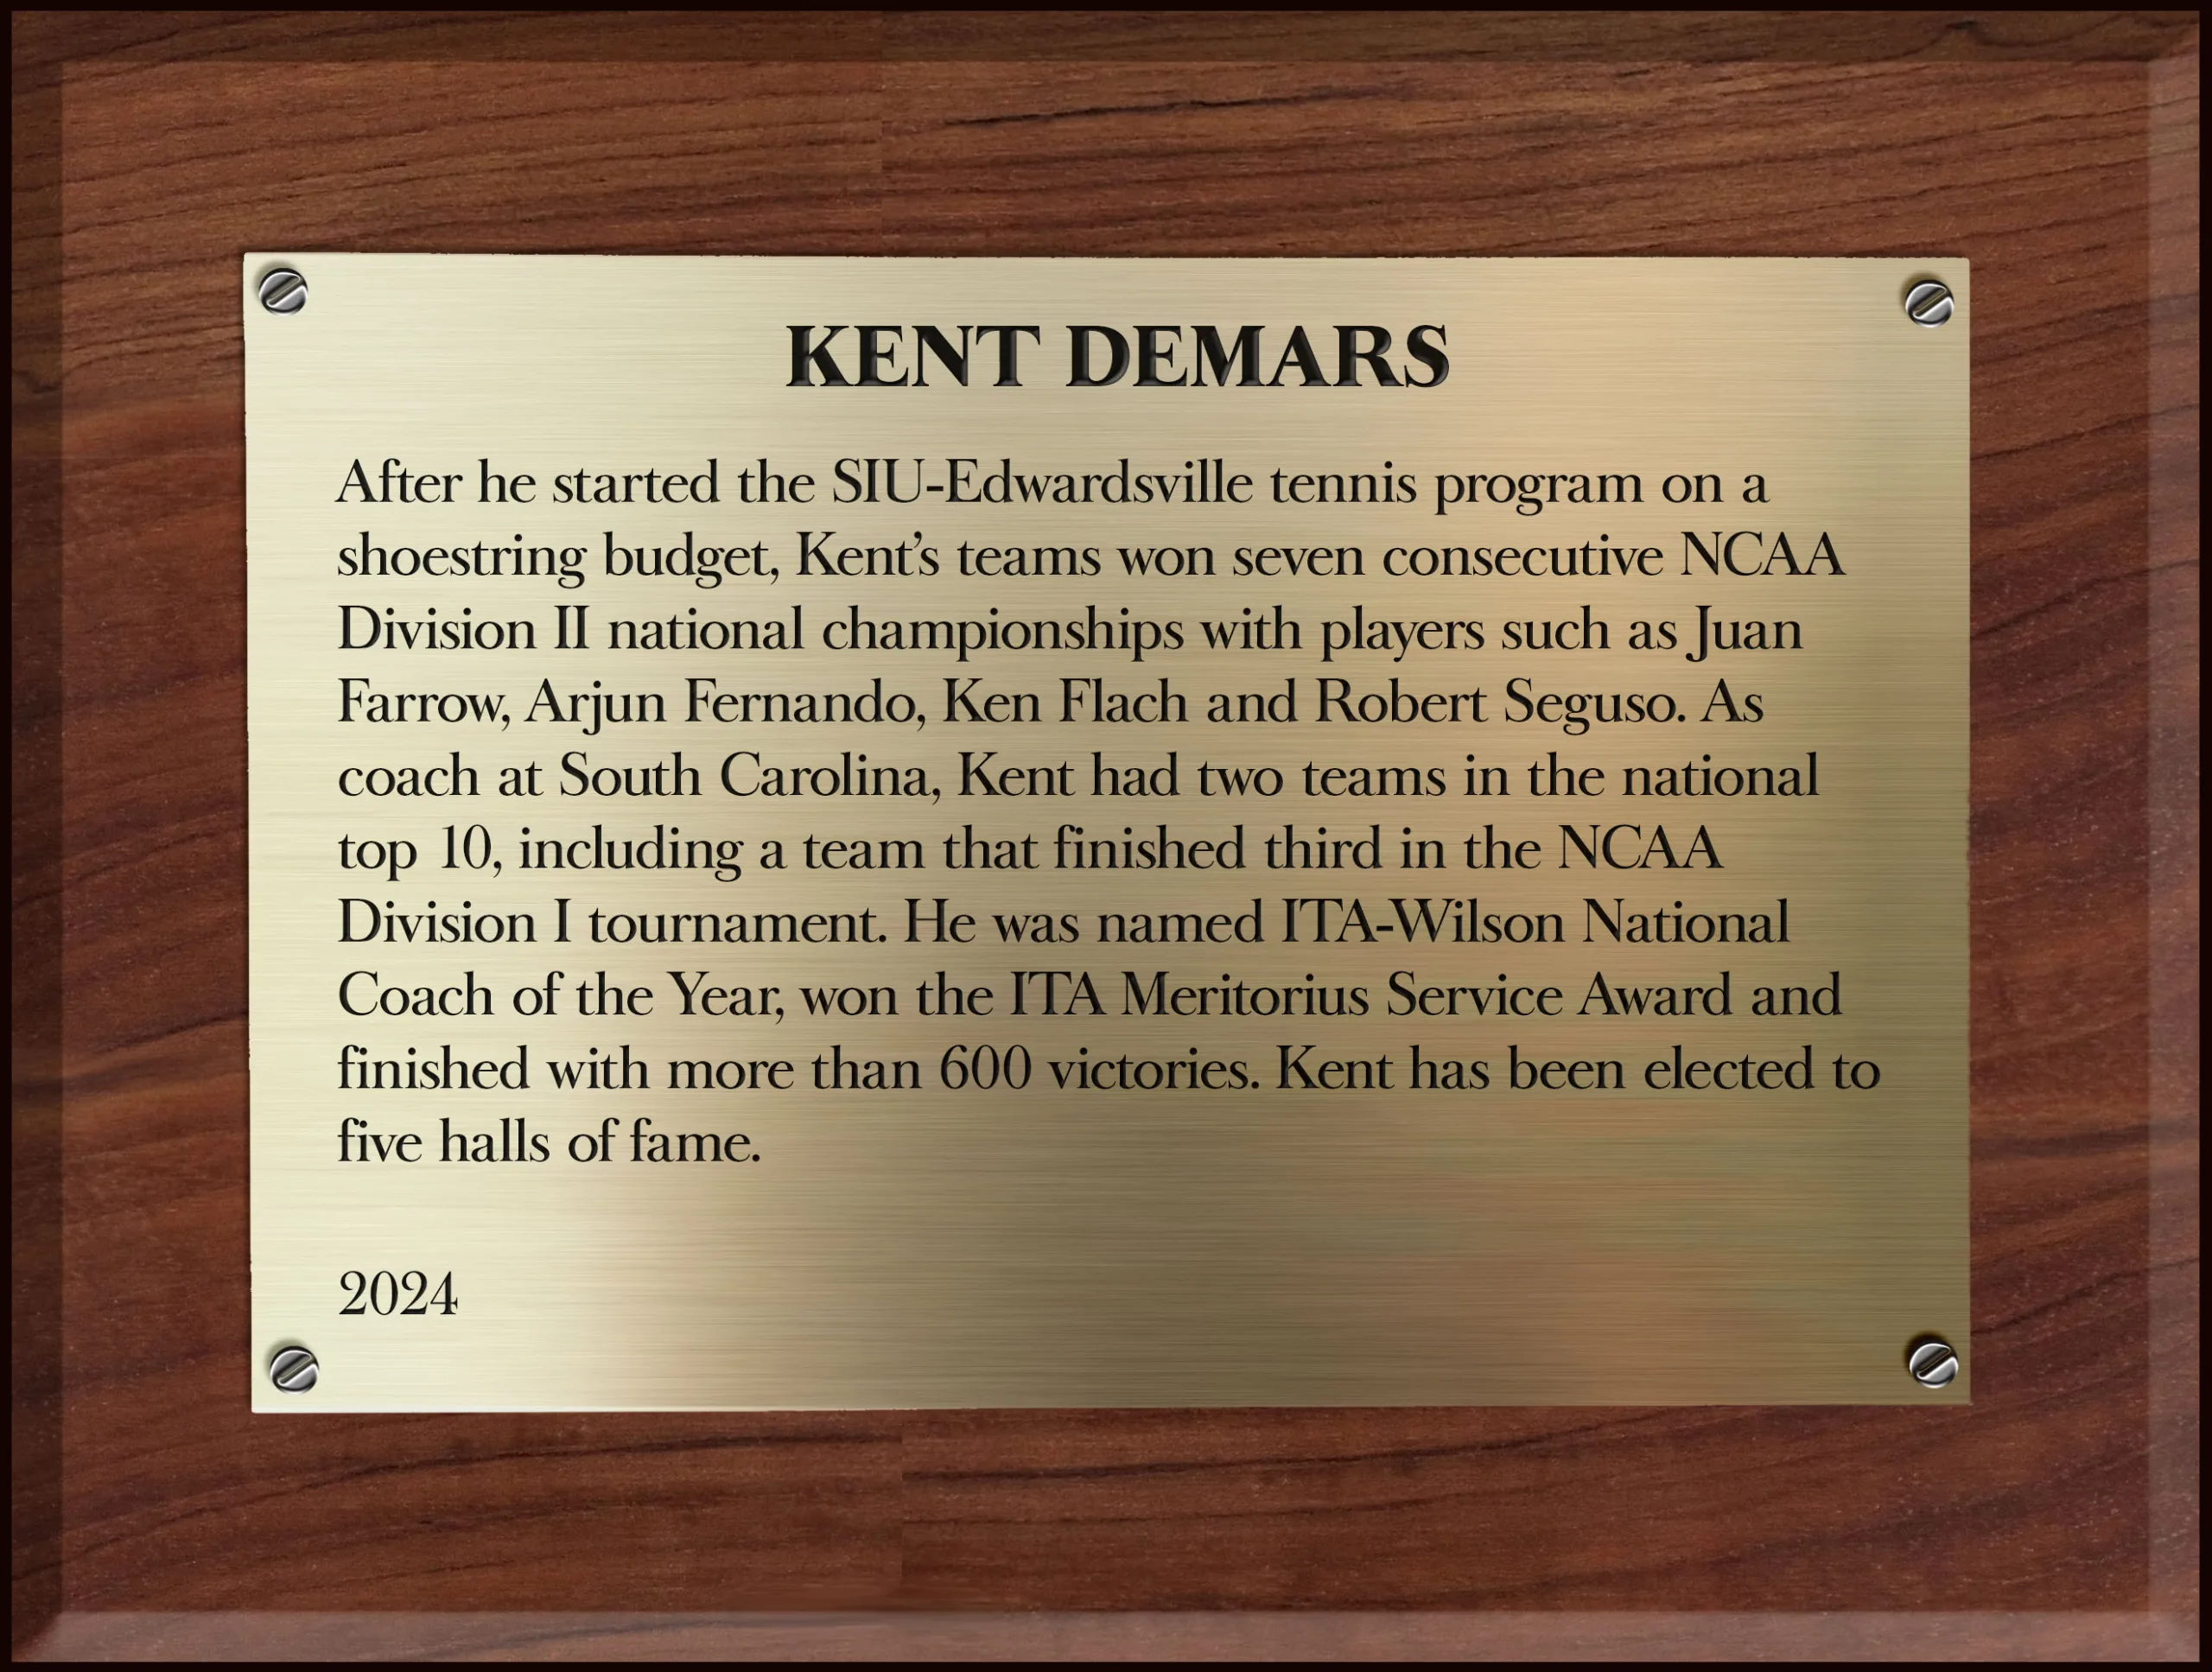 Kent DeMars